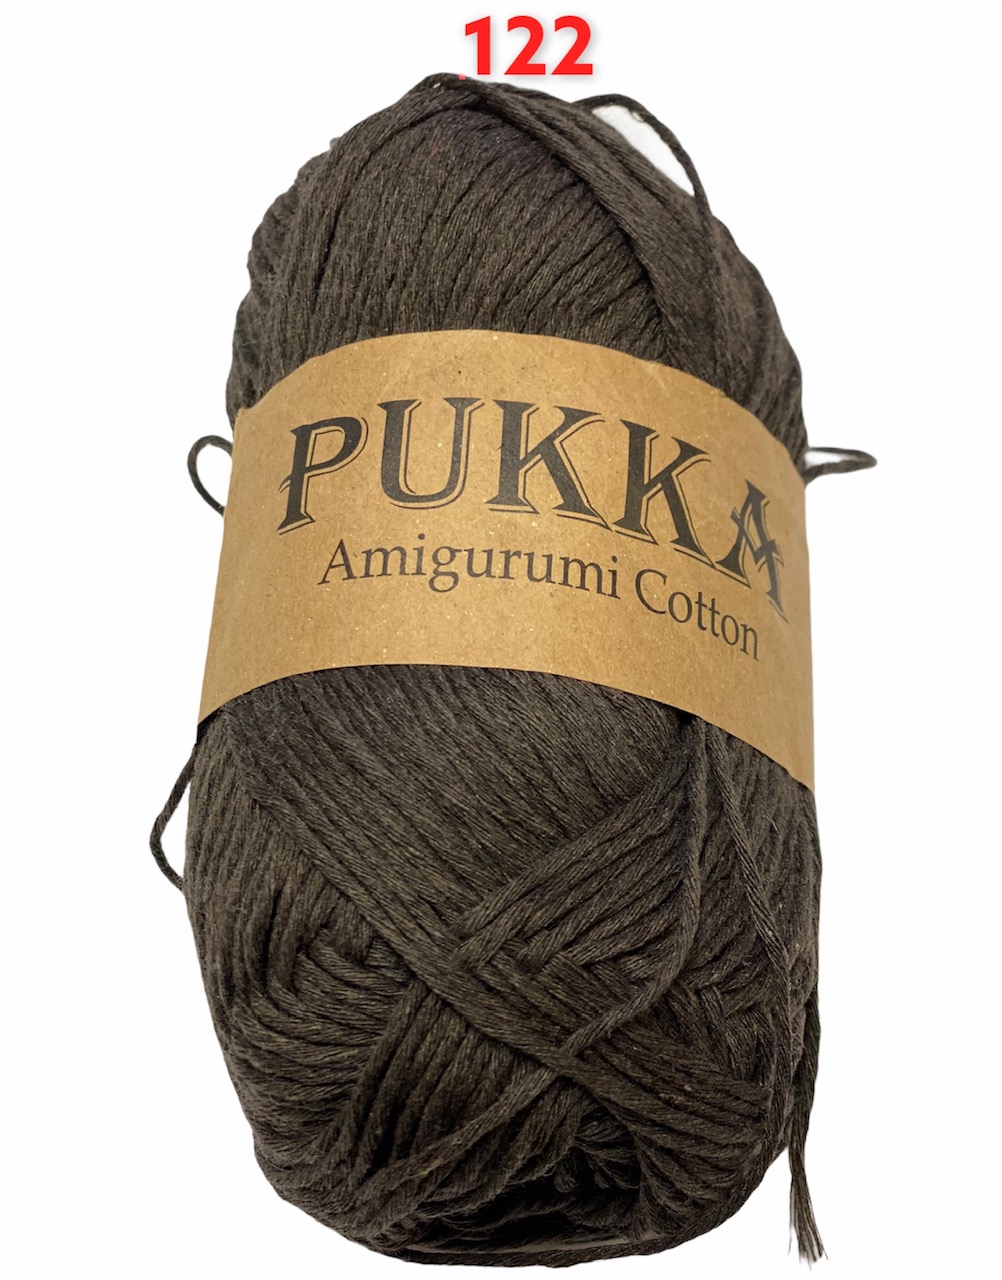 PUKKA Amigurumi Cotton 100g,122